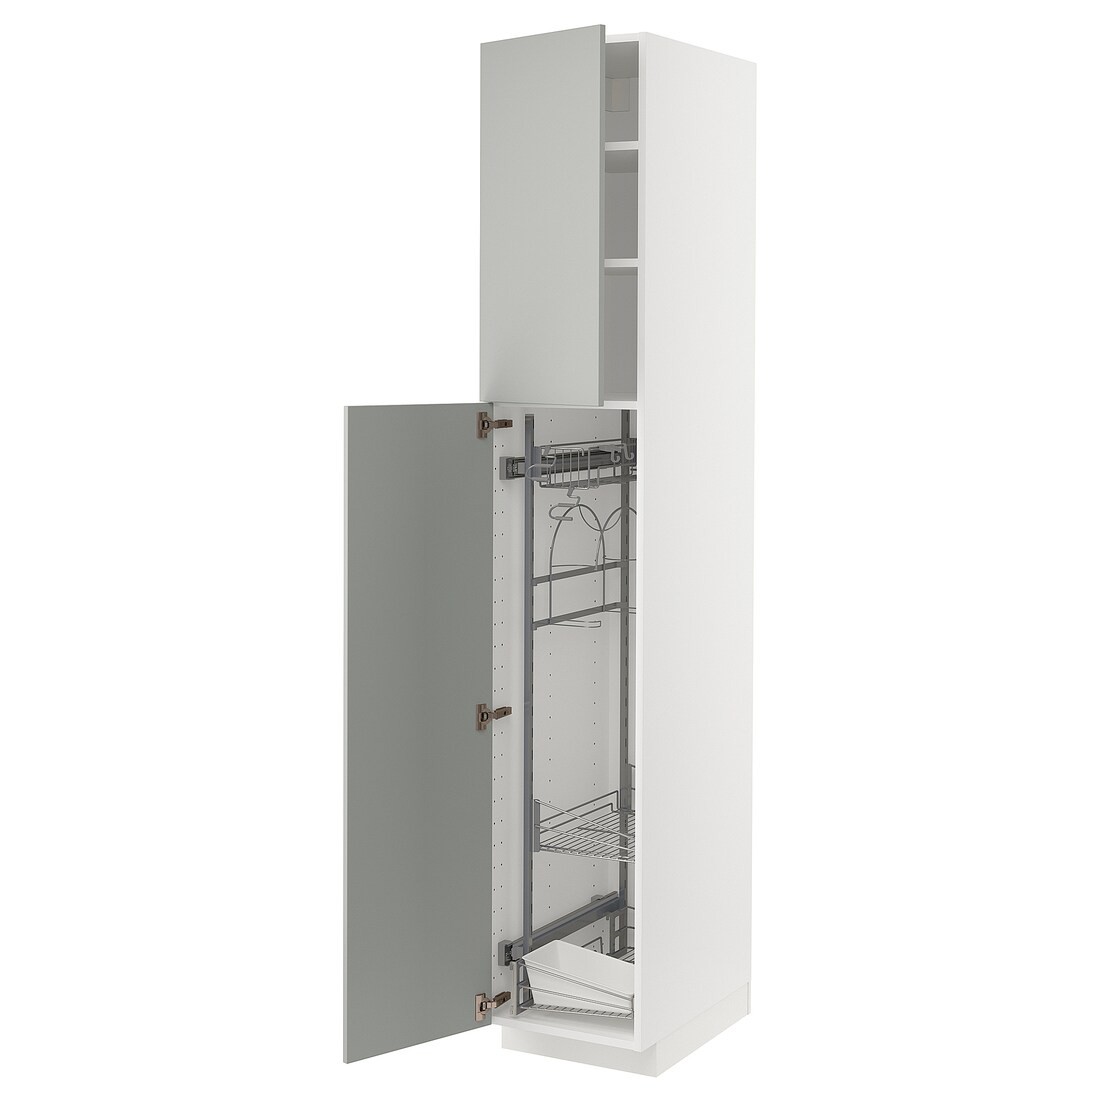 METOD Высокий шкаф с отделением для аксессуаров для уборки, белый / Хавсторп светло-серый, 40x60x220 см